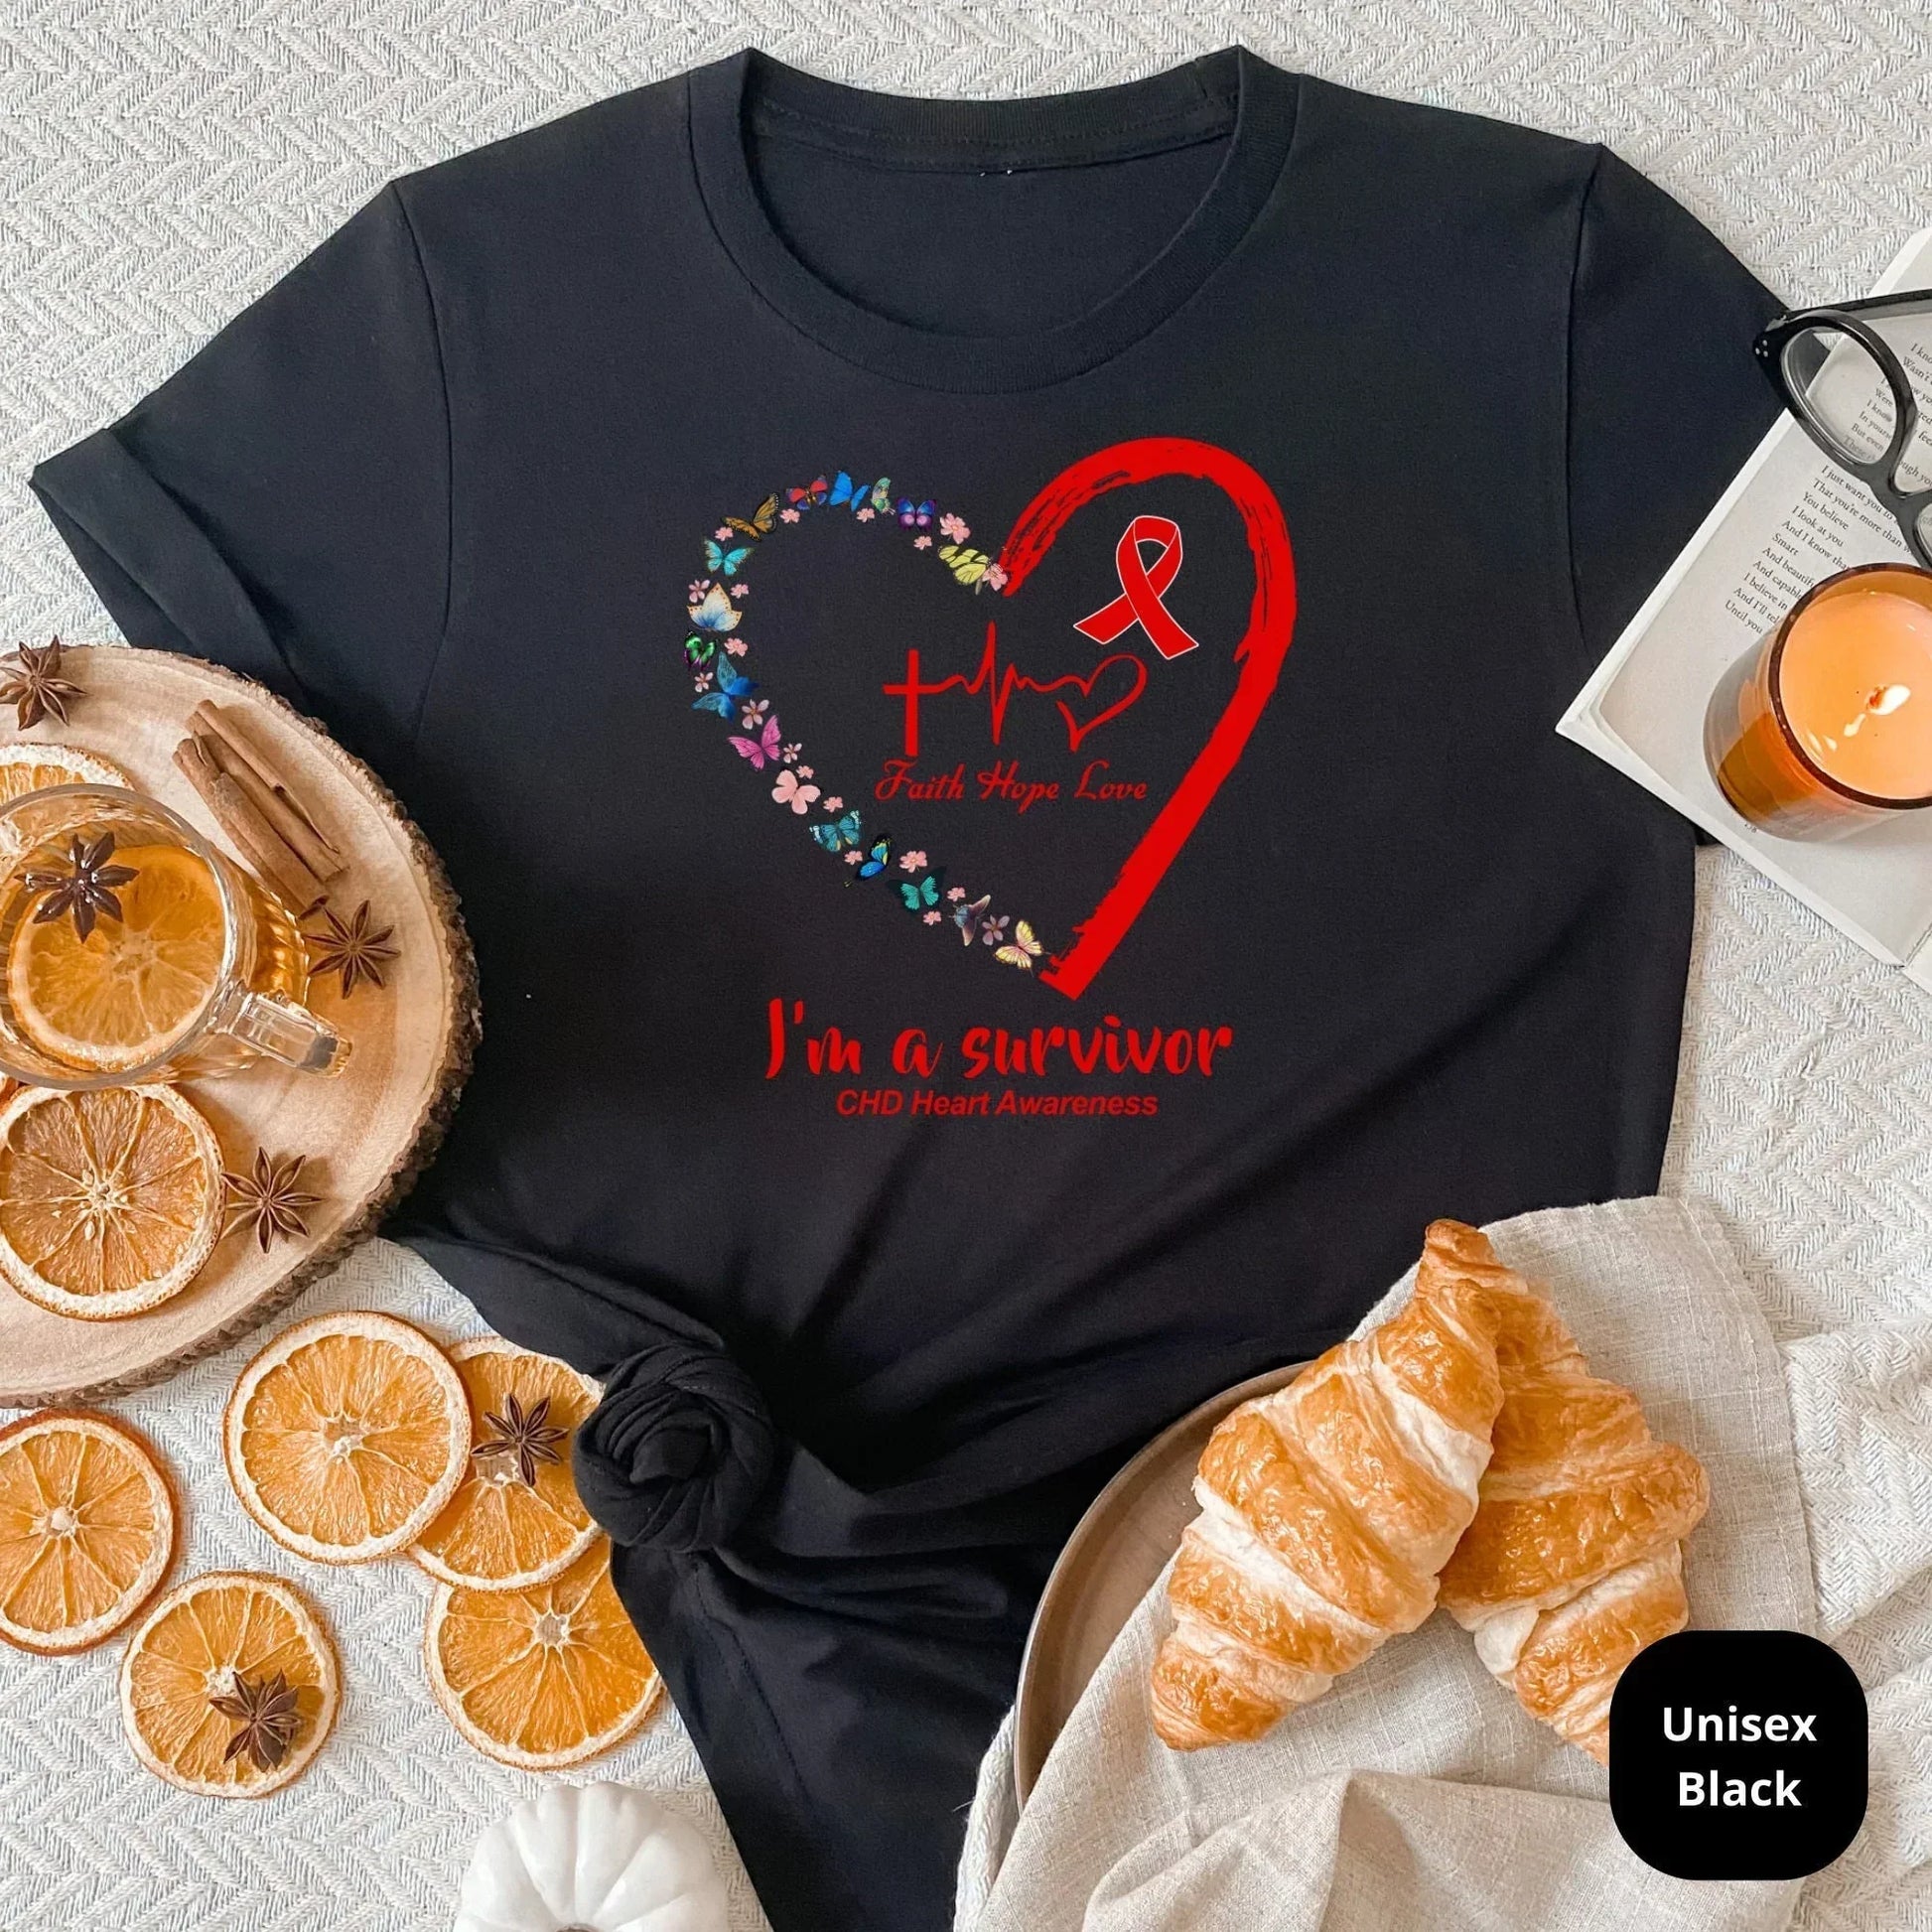 CHD Awareness | Heart Warrior Shirt | Heart Surgery Gift | Heart Awareness Hoodie| Strong Heart Sweater | CHD Shirt | Coronary Heart Disease HMDesignStudioUS